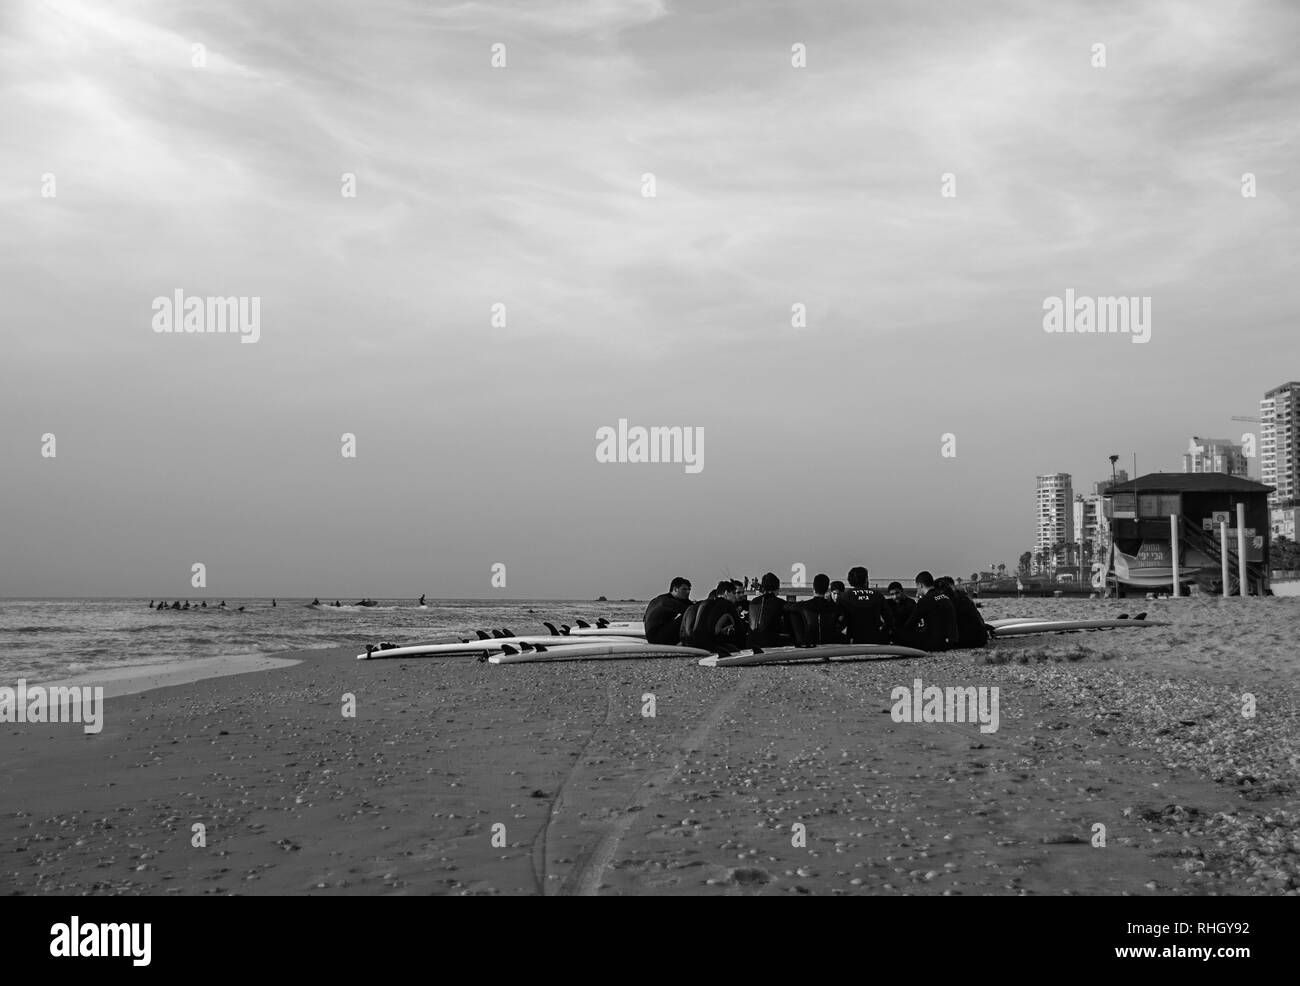 Cercle de surfeurs à combinaisons, assis sur une plage de sable fin par l'eau et d'un sauveteur shack, sous un ciel nuageux, en noir et blanc. Banque D'Images